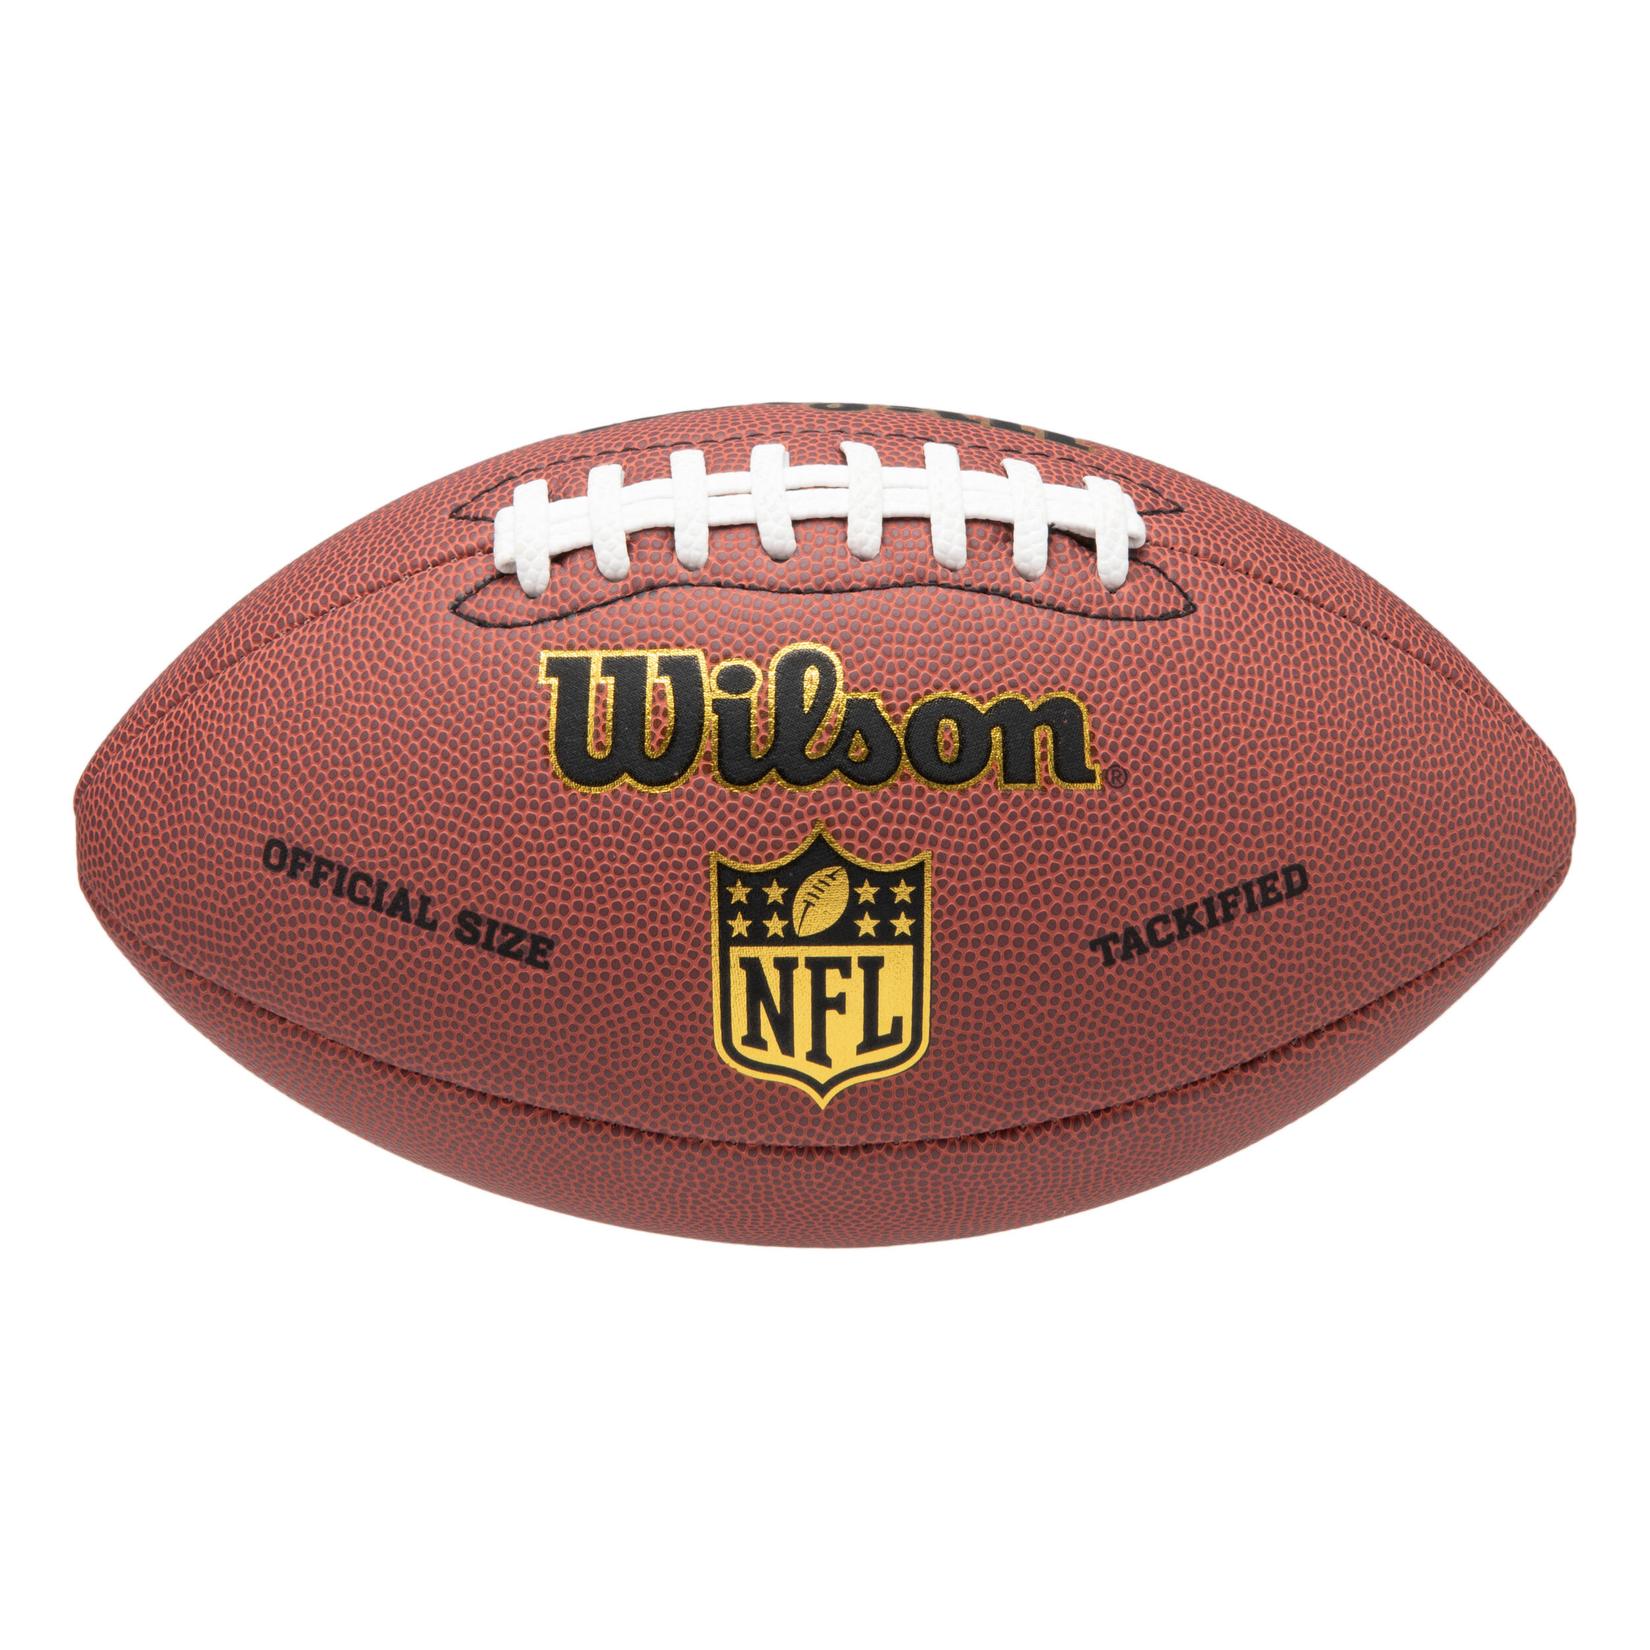 Football NFL Wilson Encore offizielle Grösse braun für 29,99€ in Decathlon